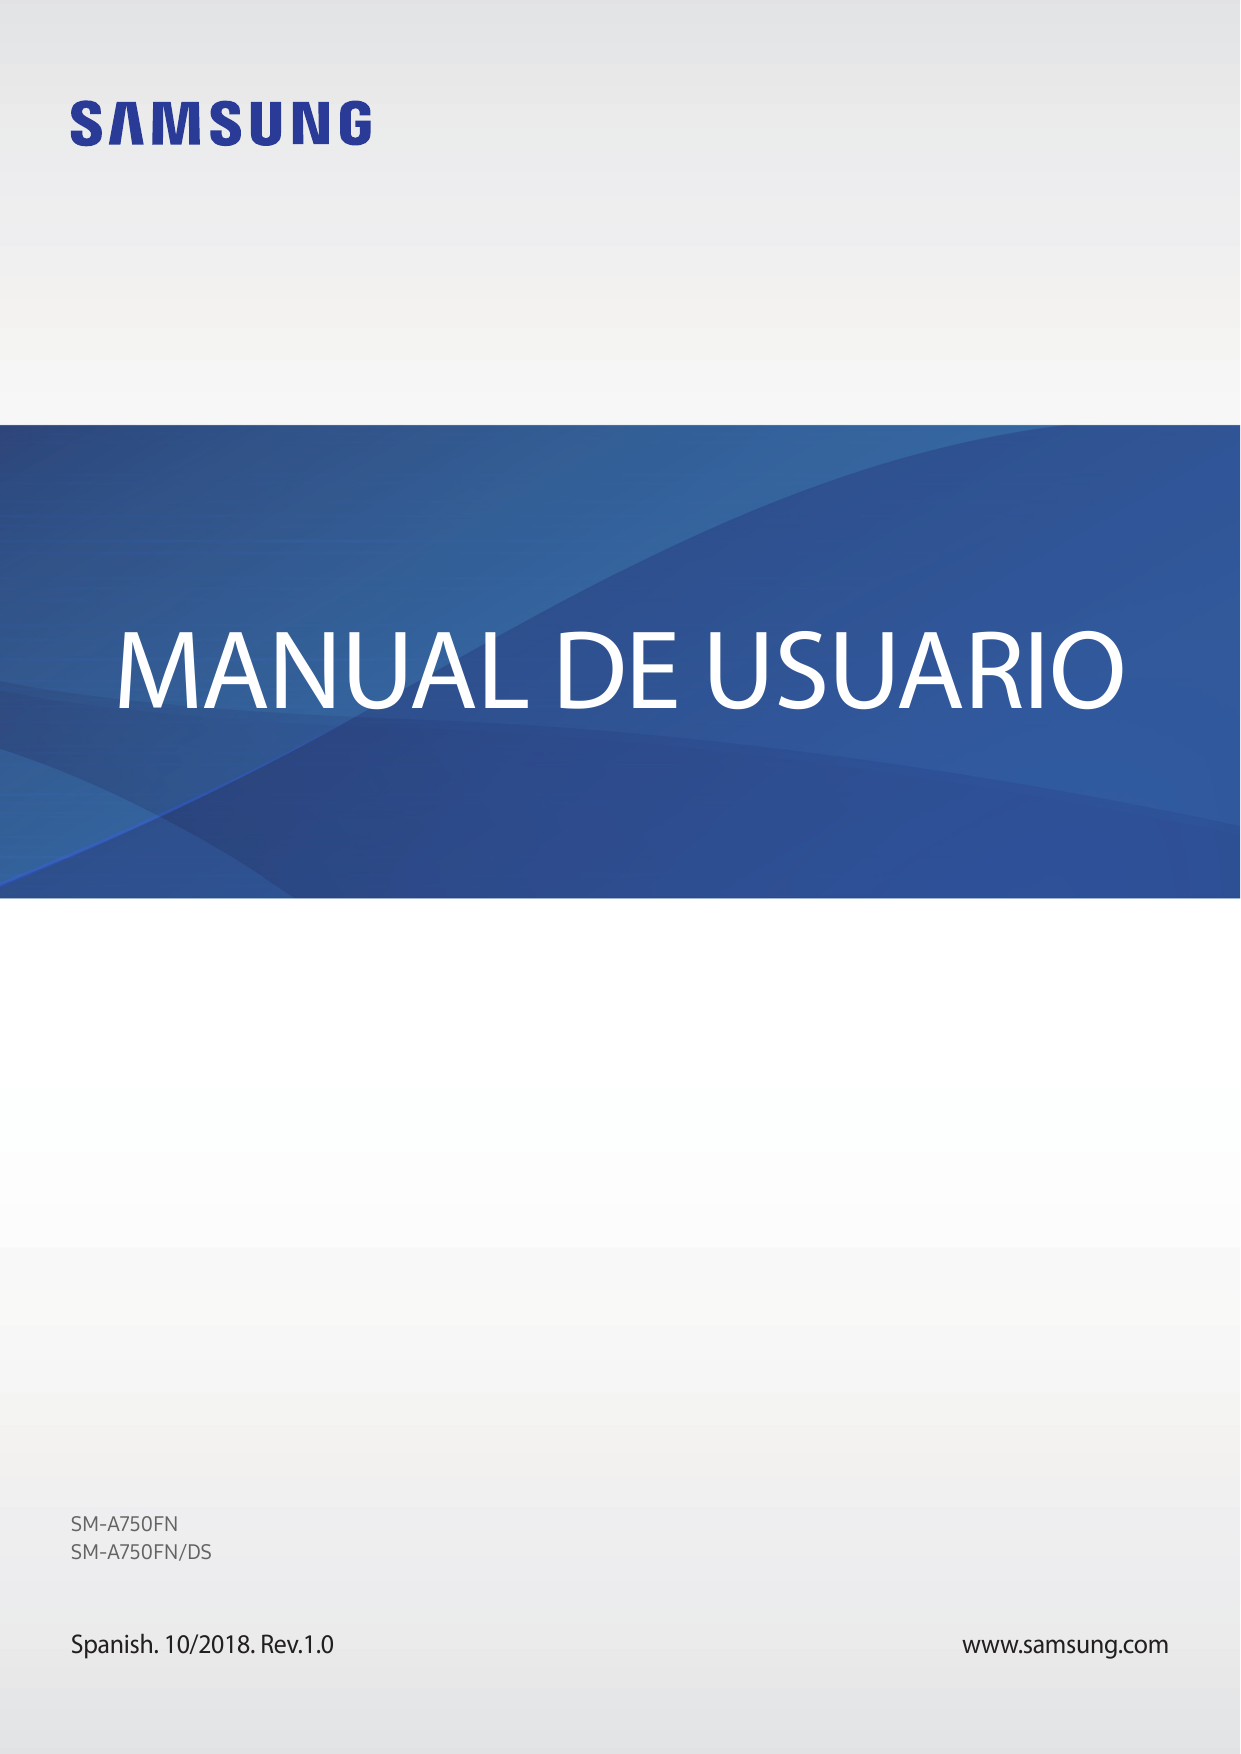 MANUAL DE USUARIOSM-A750FNSM-A750FN/DSSpanish. 10/2018. Rev.1.0www.samsung.com